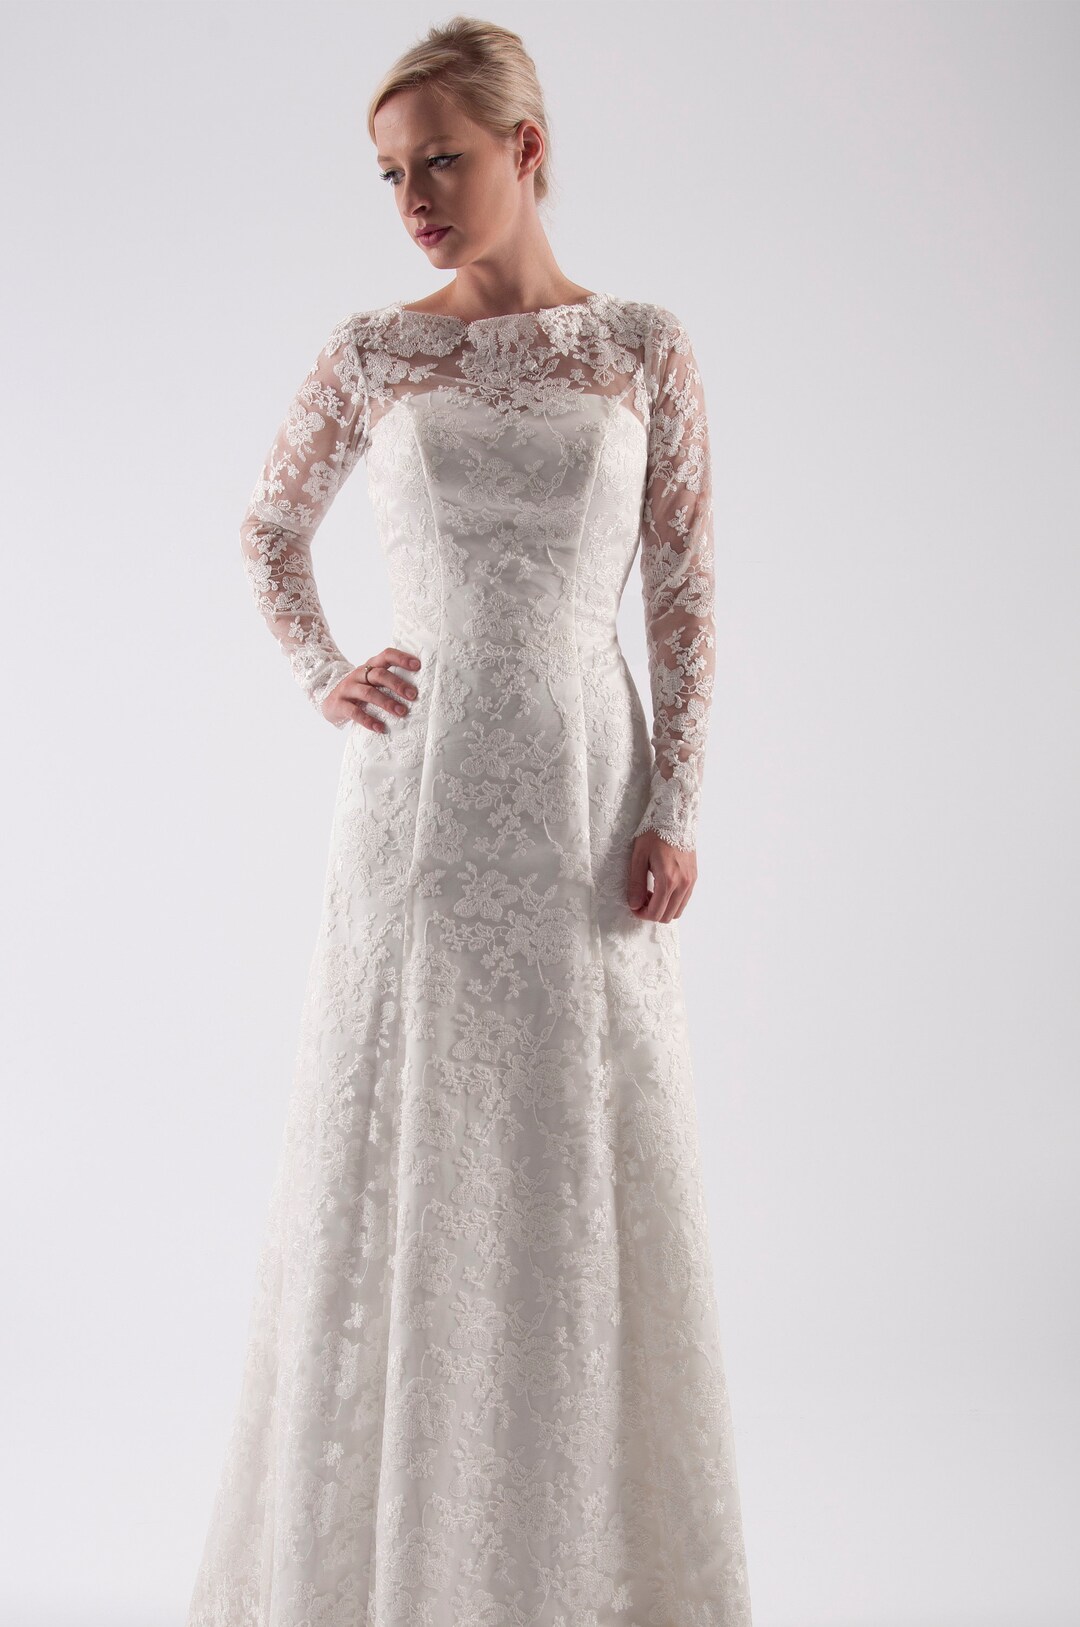 House of Mooshki Original A Line Ivory Lace Wedding Dress With - Etsy UK